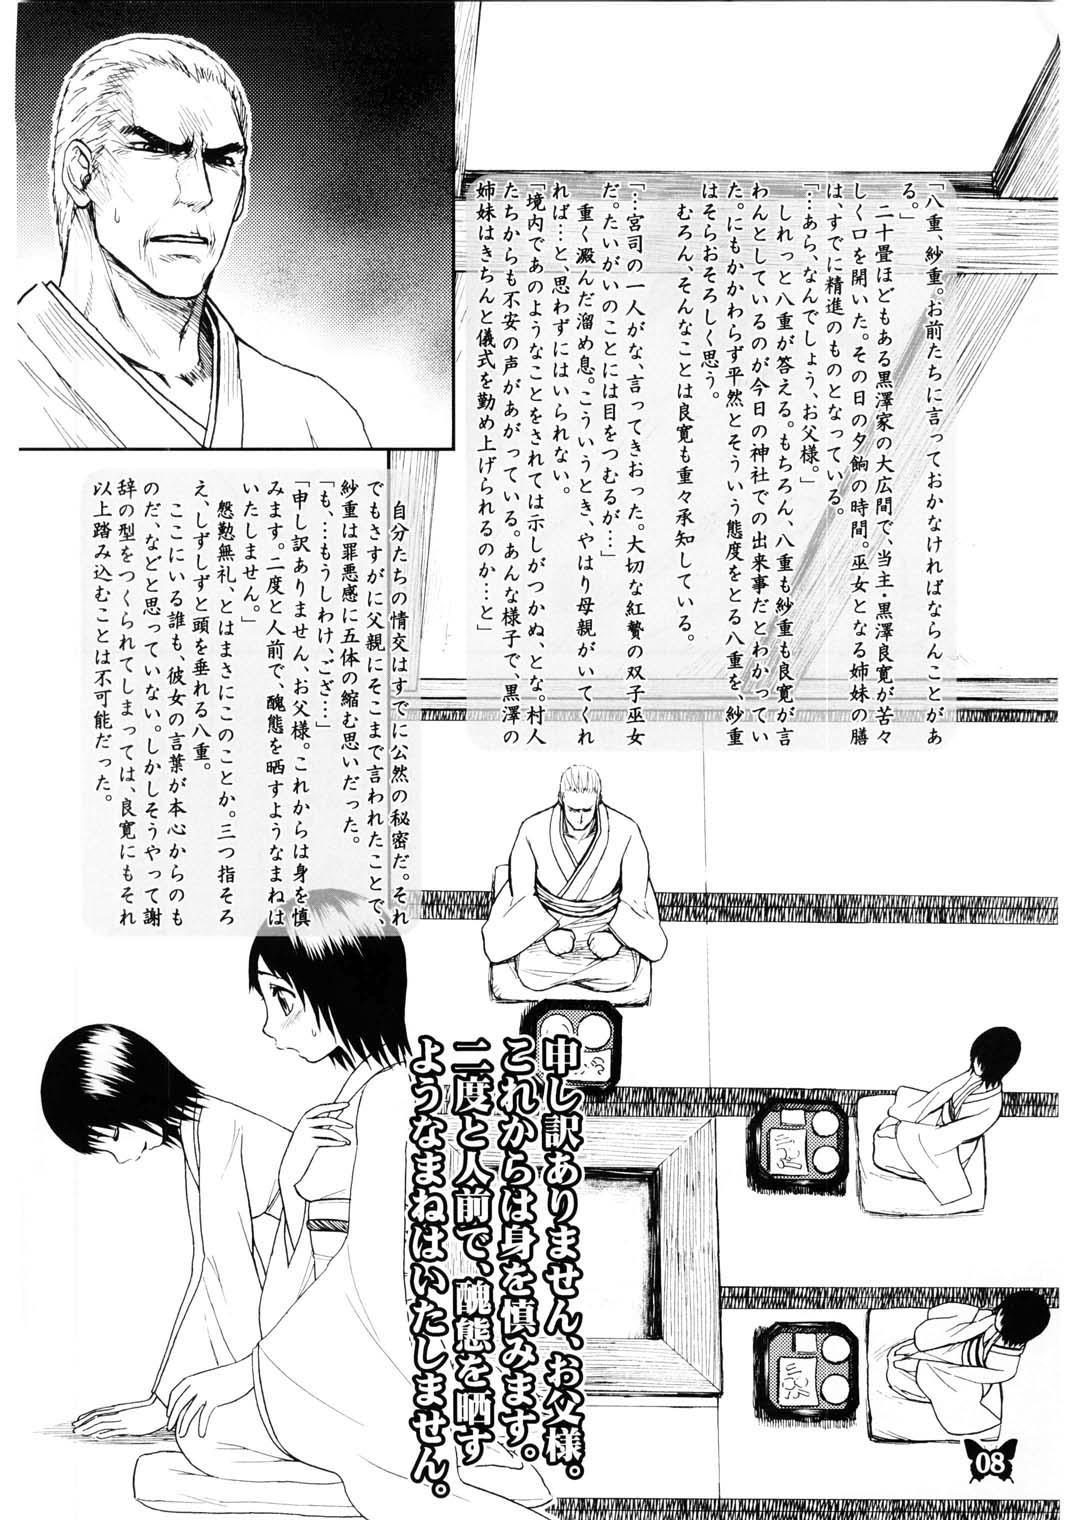 18yo Furanki - Fatal frame Gorgeous - Page 8